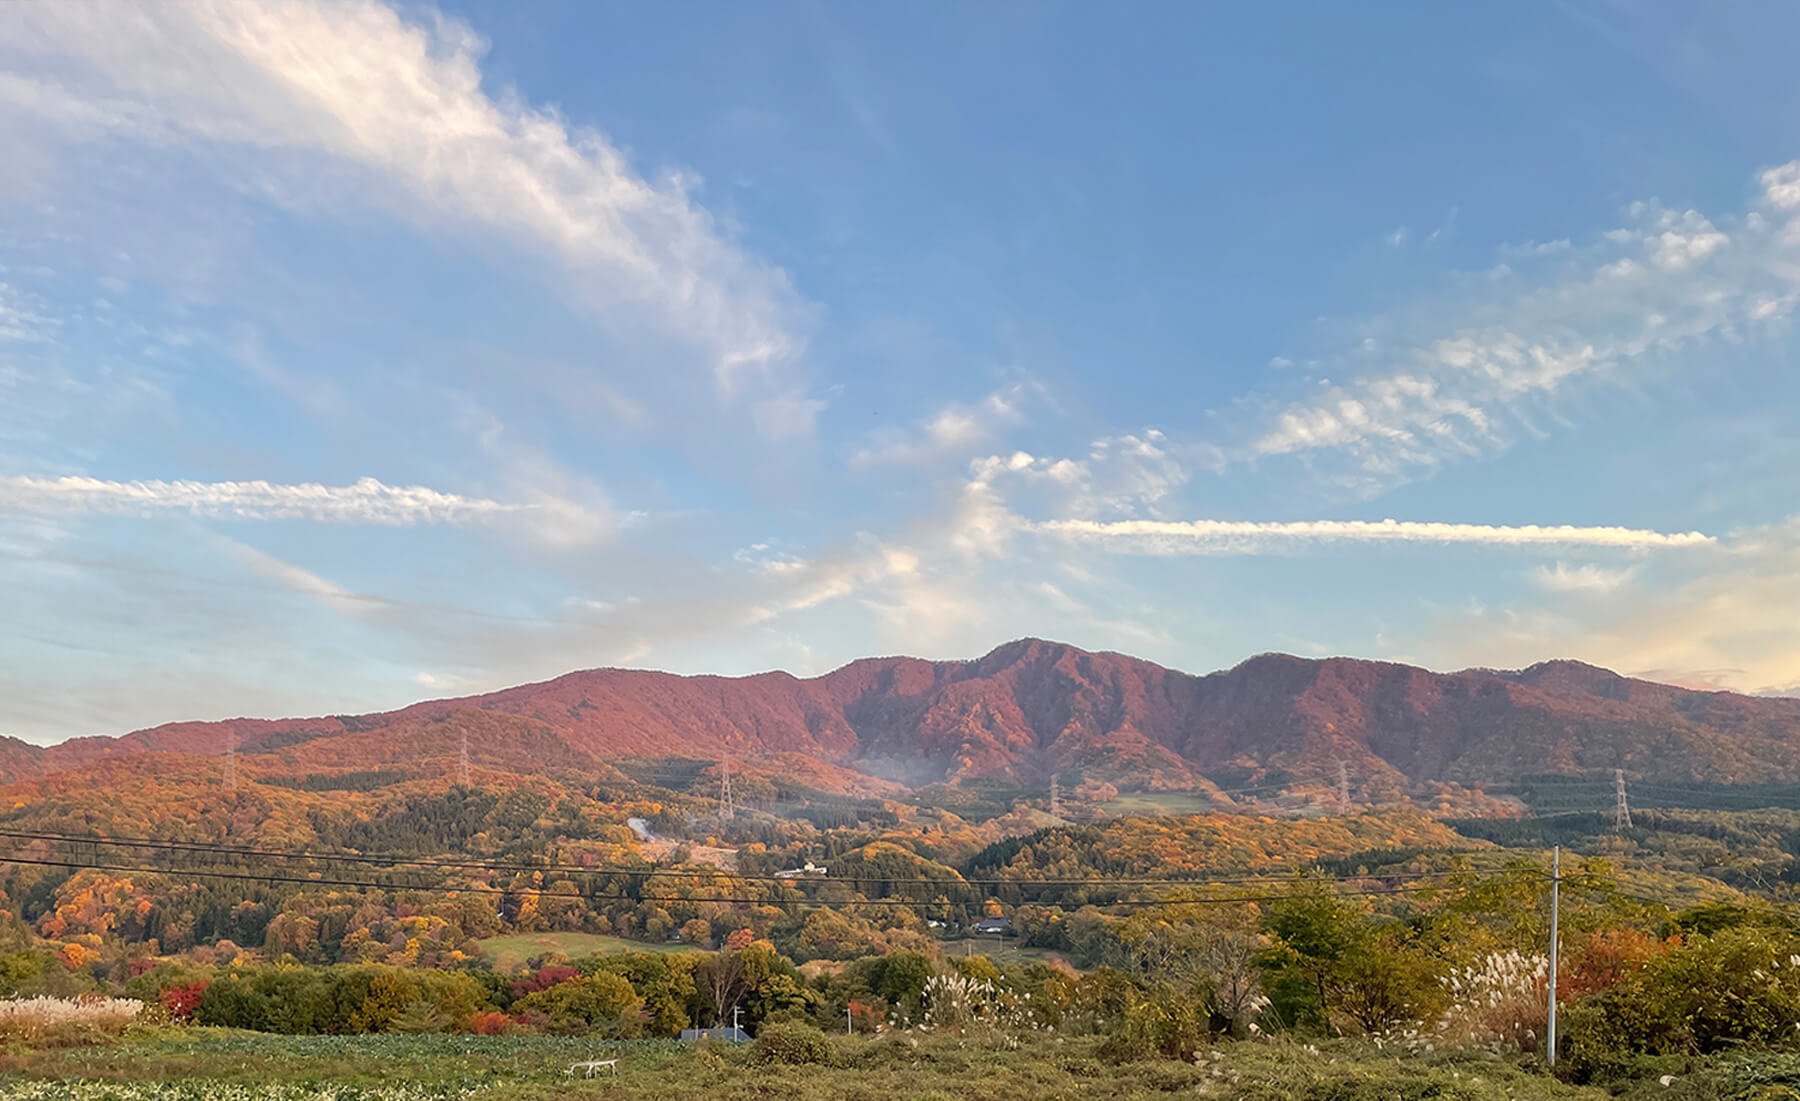 山形市の秋の風景 紅葉が綺麗な山々